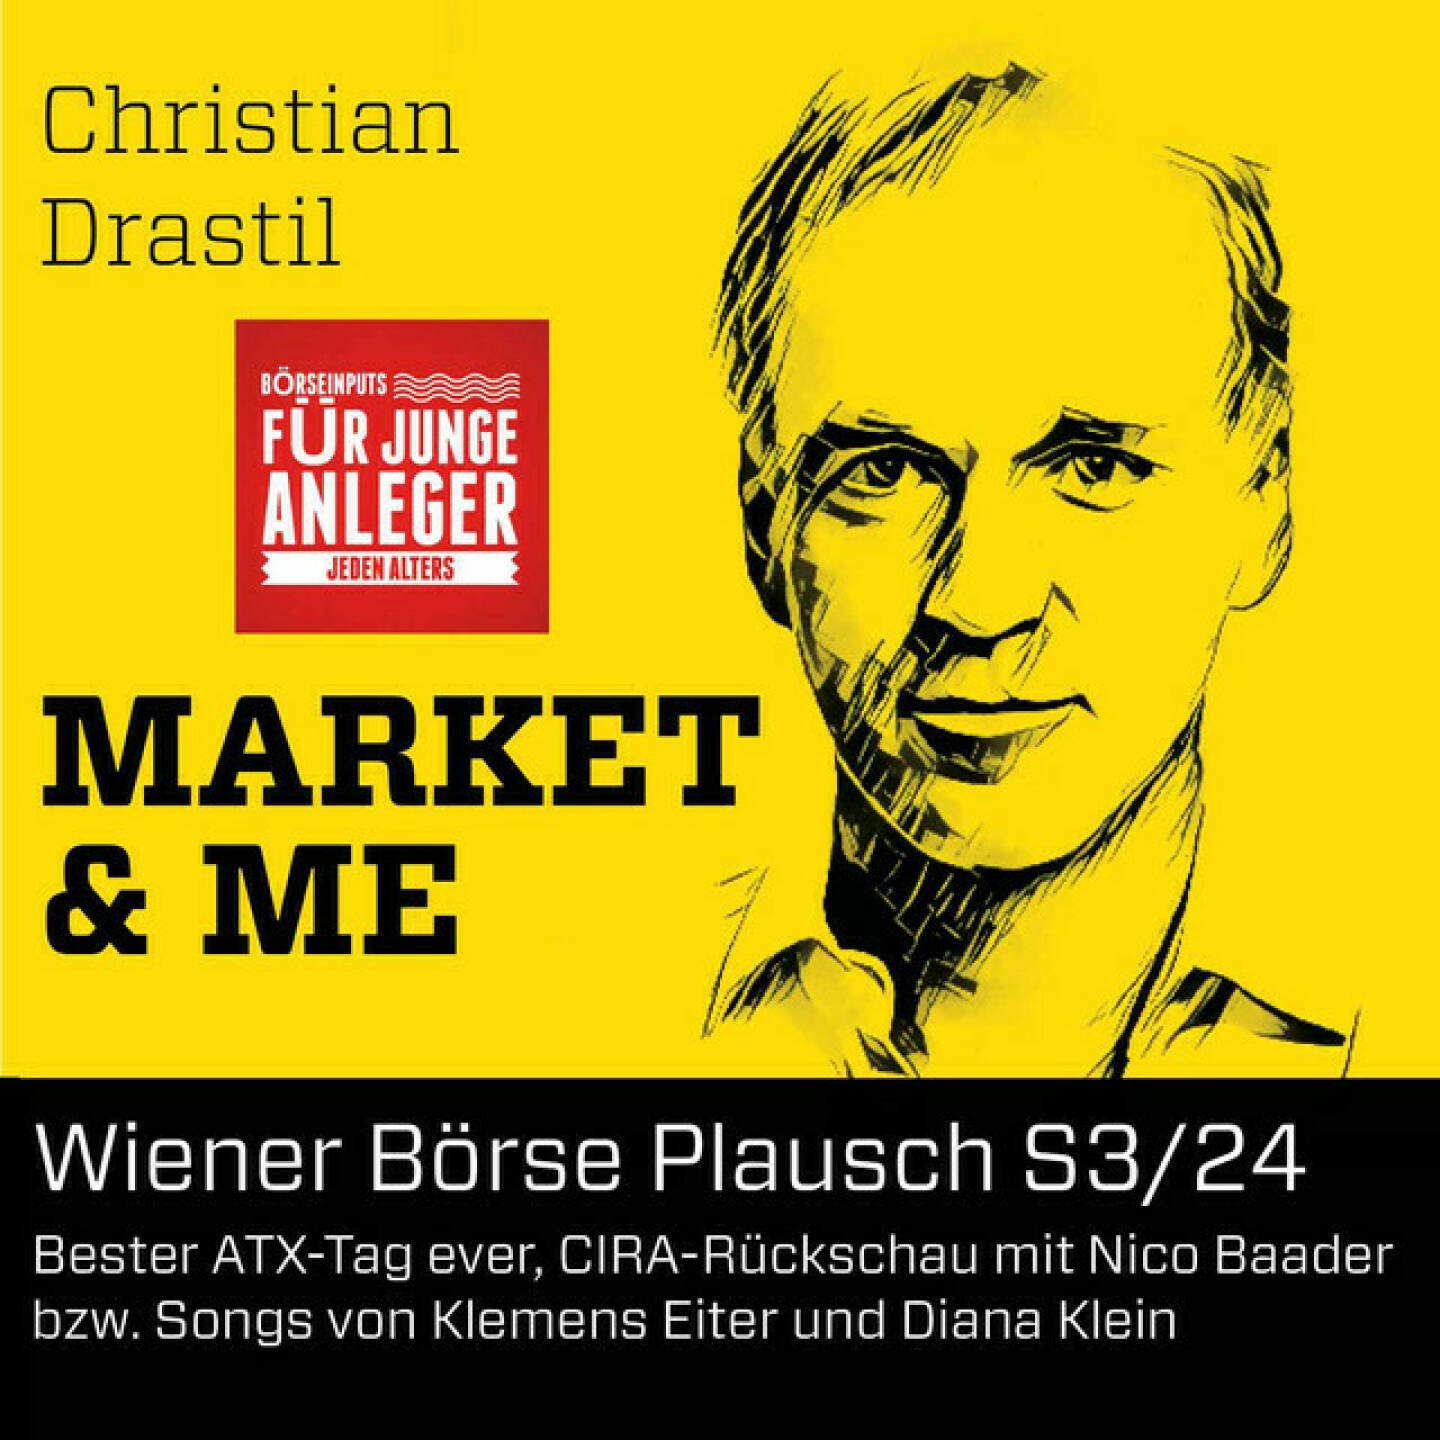 https://open.spotify.com/episode/7u1xs86tCwk9hRrMKHp6PF
Wiener Börse Plausch S3/24: Bester ATX-Tag ever, CIRA-Rückschau mit Nico Baader bzw. Songs von Klemens Eiter und Diana Klein - Die Wiener Börse Pläusche sind ein Podcastprojekt von Christian Drastil Comm. Unter dem Motto „Market &amp; Me“ berichtet Christian Drastil über das Tagesgeschehen an der Wiener Börse. In Folge S3/24 geht es um den stärksten Tag, den der ATX je gesehen hat. Dies heute vor 14 Jahren als Gegenreaktion auf den Lehman-Crash, einige extreme Beispiele nenne ich im Podcast. Und dann gibt es gemeinsam mit Nico Baader den grossen Rückblick auf die CIRA-Jahreskonferenz gestern, hierzu hab ich auch Songs, denn sowohl Porr-Vorstand Klemens Eiter als auch Ex-Strabag-Sprecherin Diana Neumüller-Klein wurden von der Kapitalmarktband &#34;Hauptsoch Gsund&#34; auf die Bühne geholt. Schön finde ich, dass Diana in diesem Podcast hier &#34;entdeckt&#34; wurde, ich habe diese Geschichte gestern oft gehört und mich jedesmal gefreut. News gibt es zu Agrana, Research zu AT&amp;S, voestalpine, voestalpine, RHI und Bawag. <br/>Diana im Börsepeople-Podcast am Ende der Folge als Sängerin: http://www.boersenradio.at/people .<br/>Die 2022er-Folgen vom Wiener Börse Plausch sind präsentiert von Wienerberger, CEO Heimo Scheuch hat sich im Q4 ebenfalls unter die Podcaster gemischt: https://open.spotify.com/show/5D4Gz8bpAYNAI6tg7H695E . Co-Presenter im September ist die VAS AG https://www.vas.co.at , da werden wir im Monatsverlauf einiges bringen.<br/>Der Theme-Song, der eigentlich schon aus dem Jänner stammt und spontan von der Rosinger Group supportet wurde: Sound &amp; Lyrics unter http://www.boersenradio.at/page/podcast/2734 .<br/>Risikohinweis: Die hier veröffentlichten Gedanken sind weder als Empfehlung noch als ein Angebot oder eine Aufforderung zum An- oder Verkauf von Finanzinstrumenten zu verstehen und sollen auch nicht so verstanden werden. Sie stellen lediglich die persönliche Meinung der Podcastmacher dar. Der Handel mit Finanzprodukt en unterliegt einem Risiko. Sie können Ihr eingesetztes Kapital verlieren. Und: Bewertungen bei Apple (oder auch Spotify) machen mir Freude: https://podcasts.apple.com/at/podc ast/christian-drastil-wiener-börse-sport-musik-und-mehr-my-life/id1484919130.